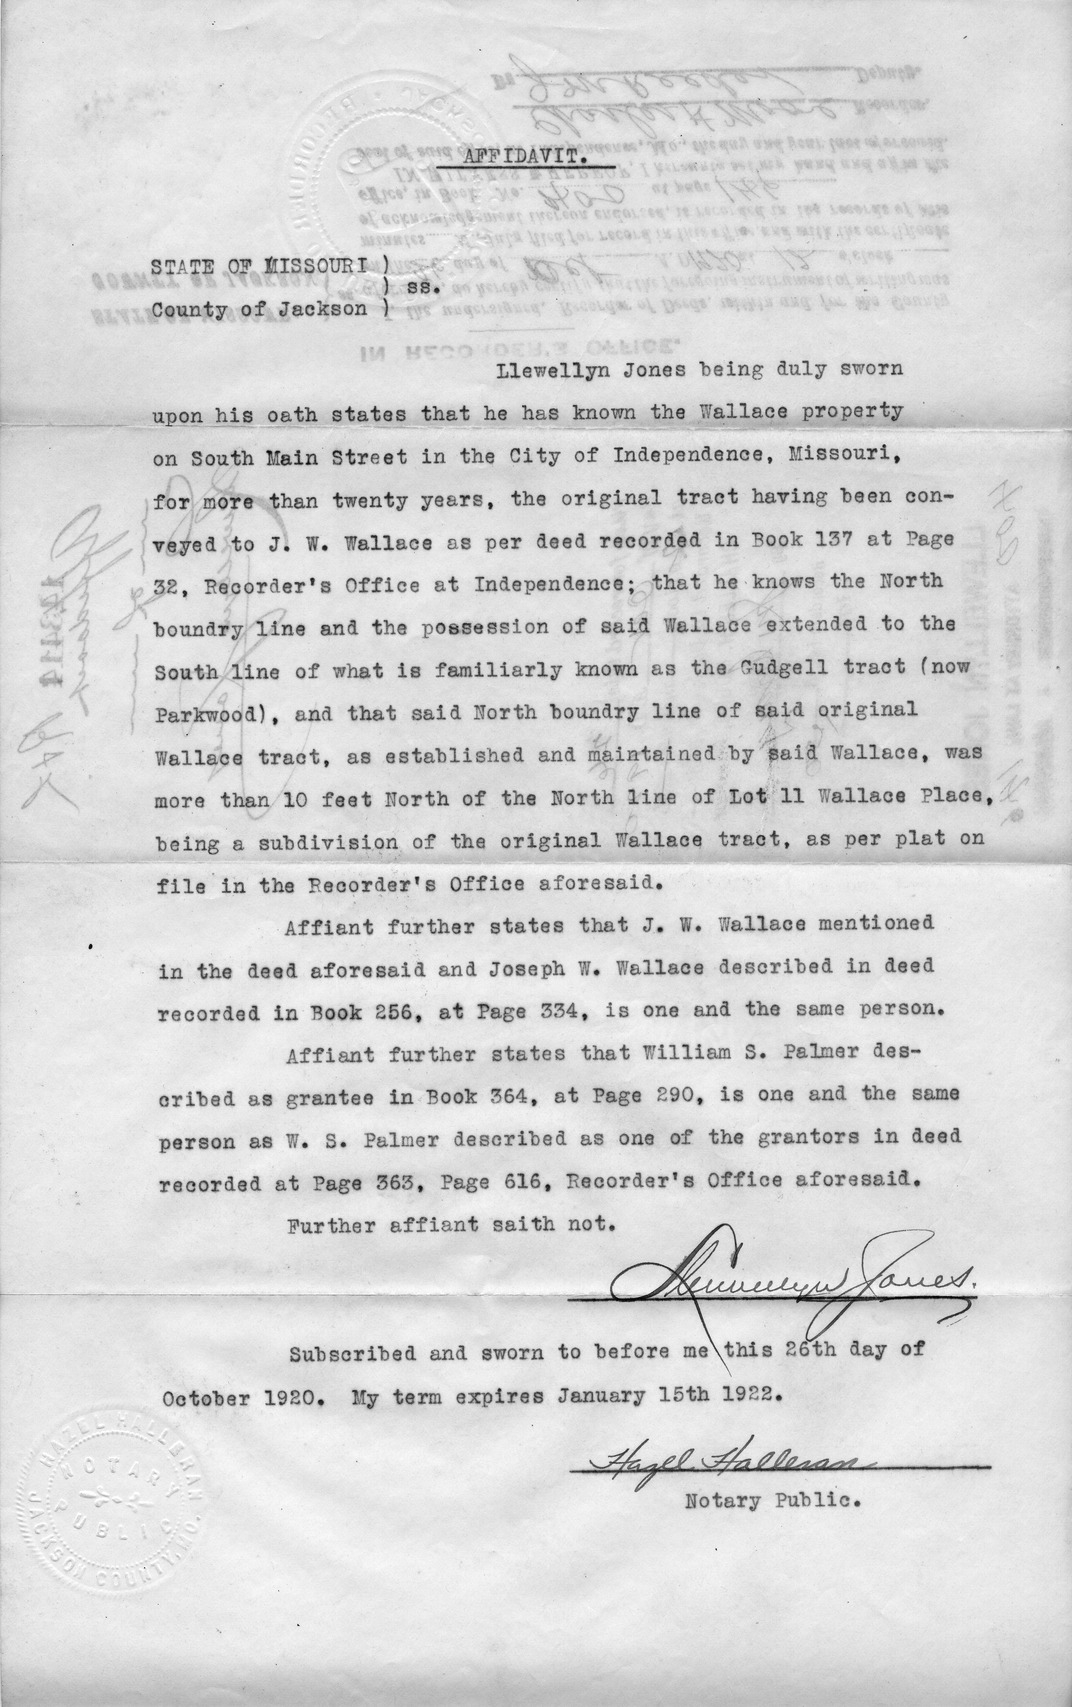 Affidavit of Llewellyn Jones